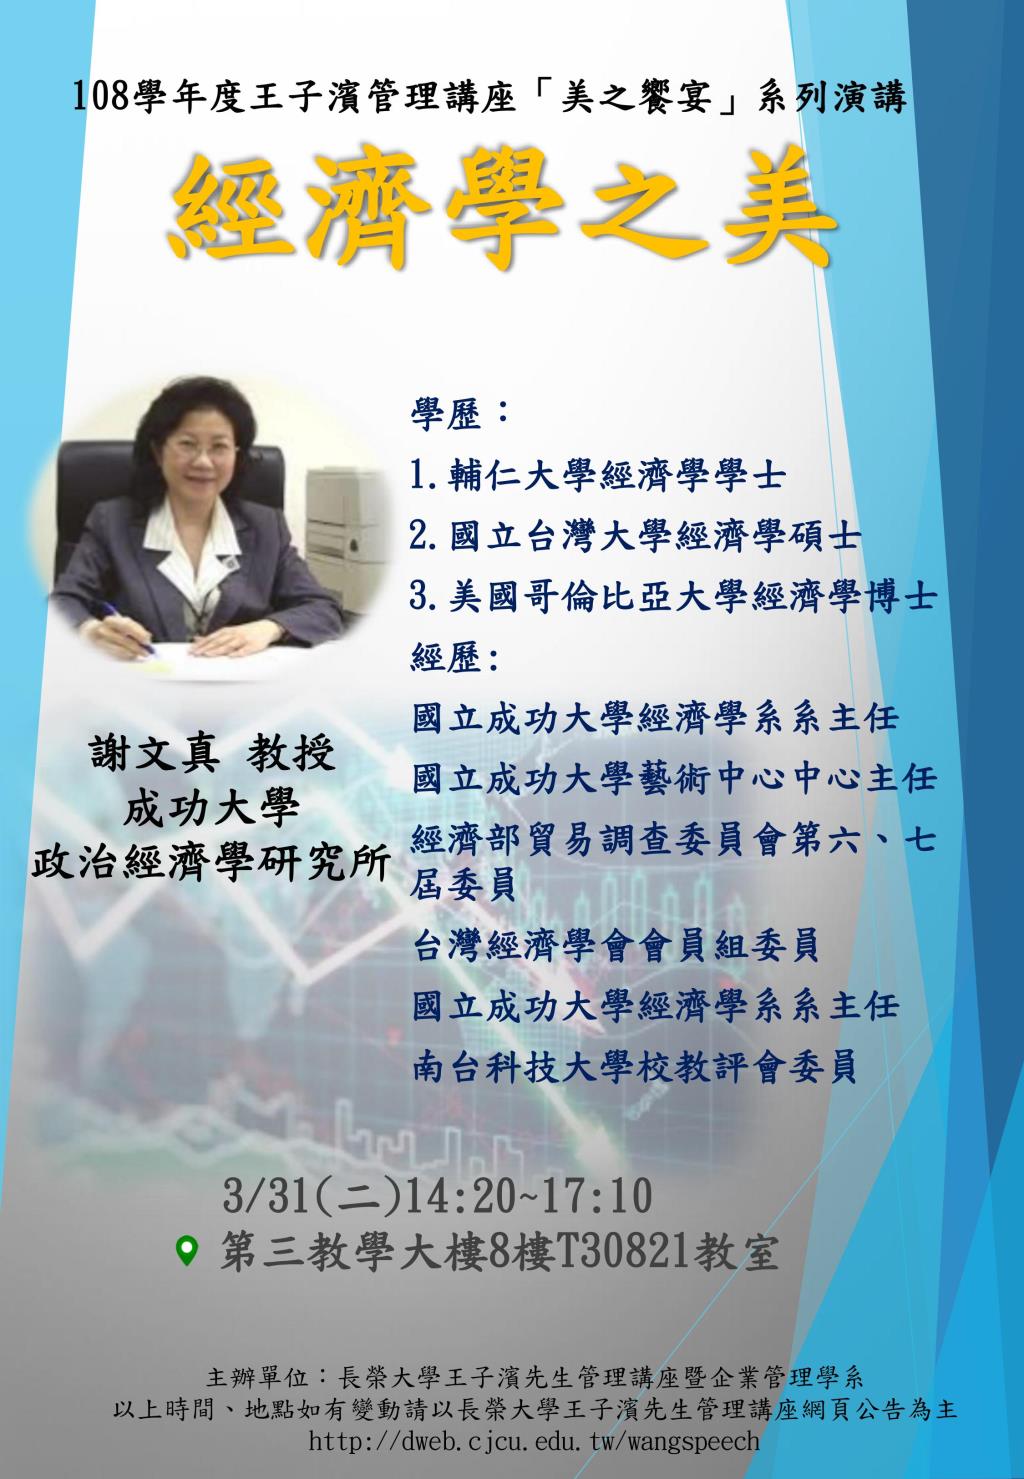 敬邀參加本週二下午(03/31)王子濱先生管理講---經濟學之美_謝文真 教授 專題演講